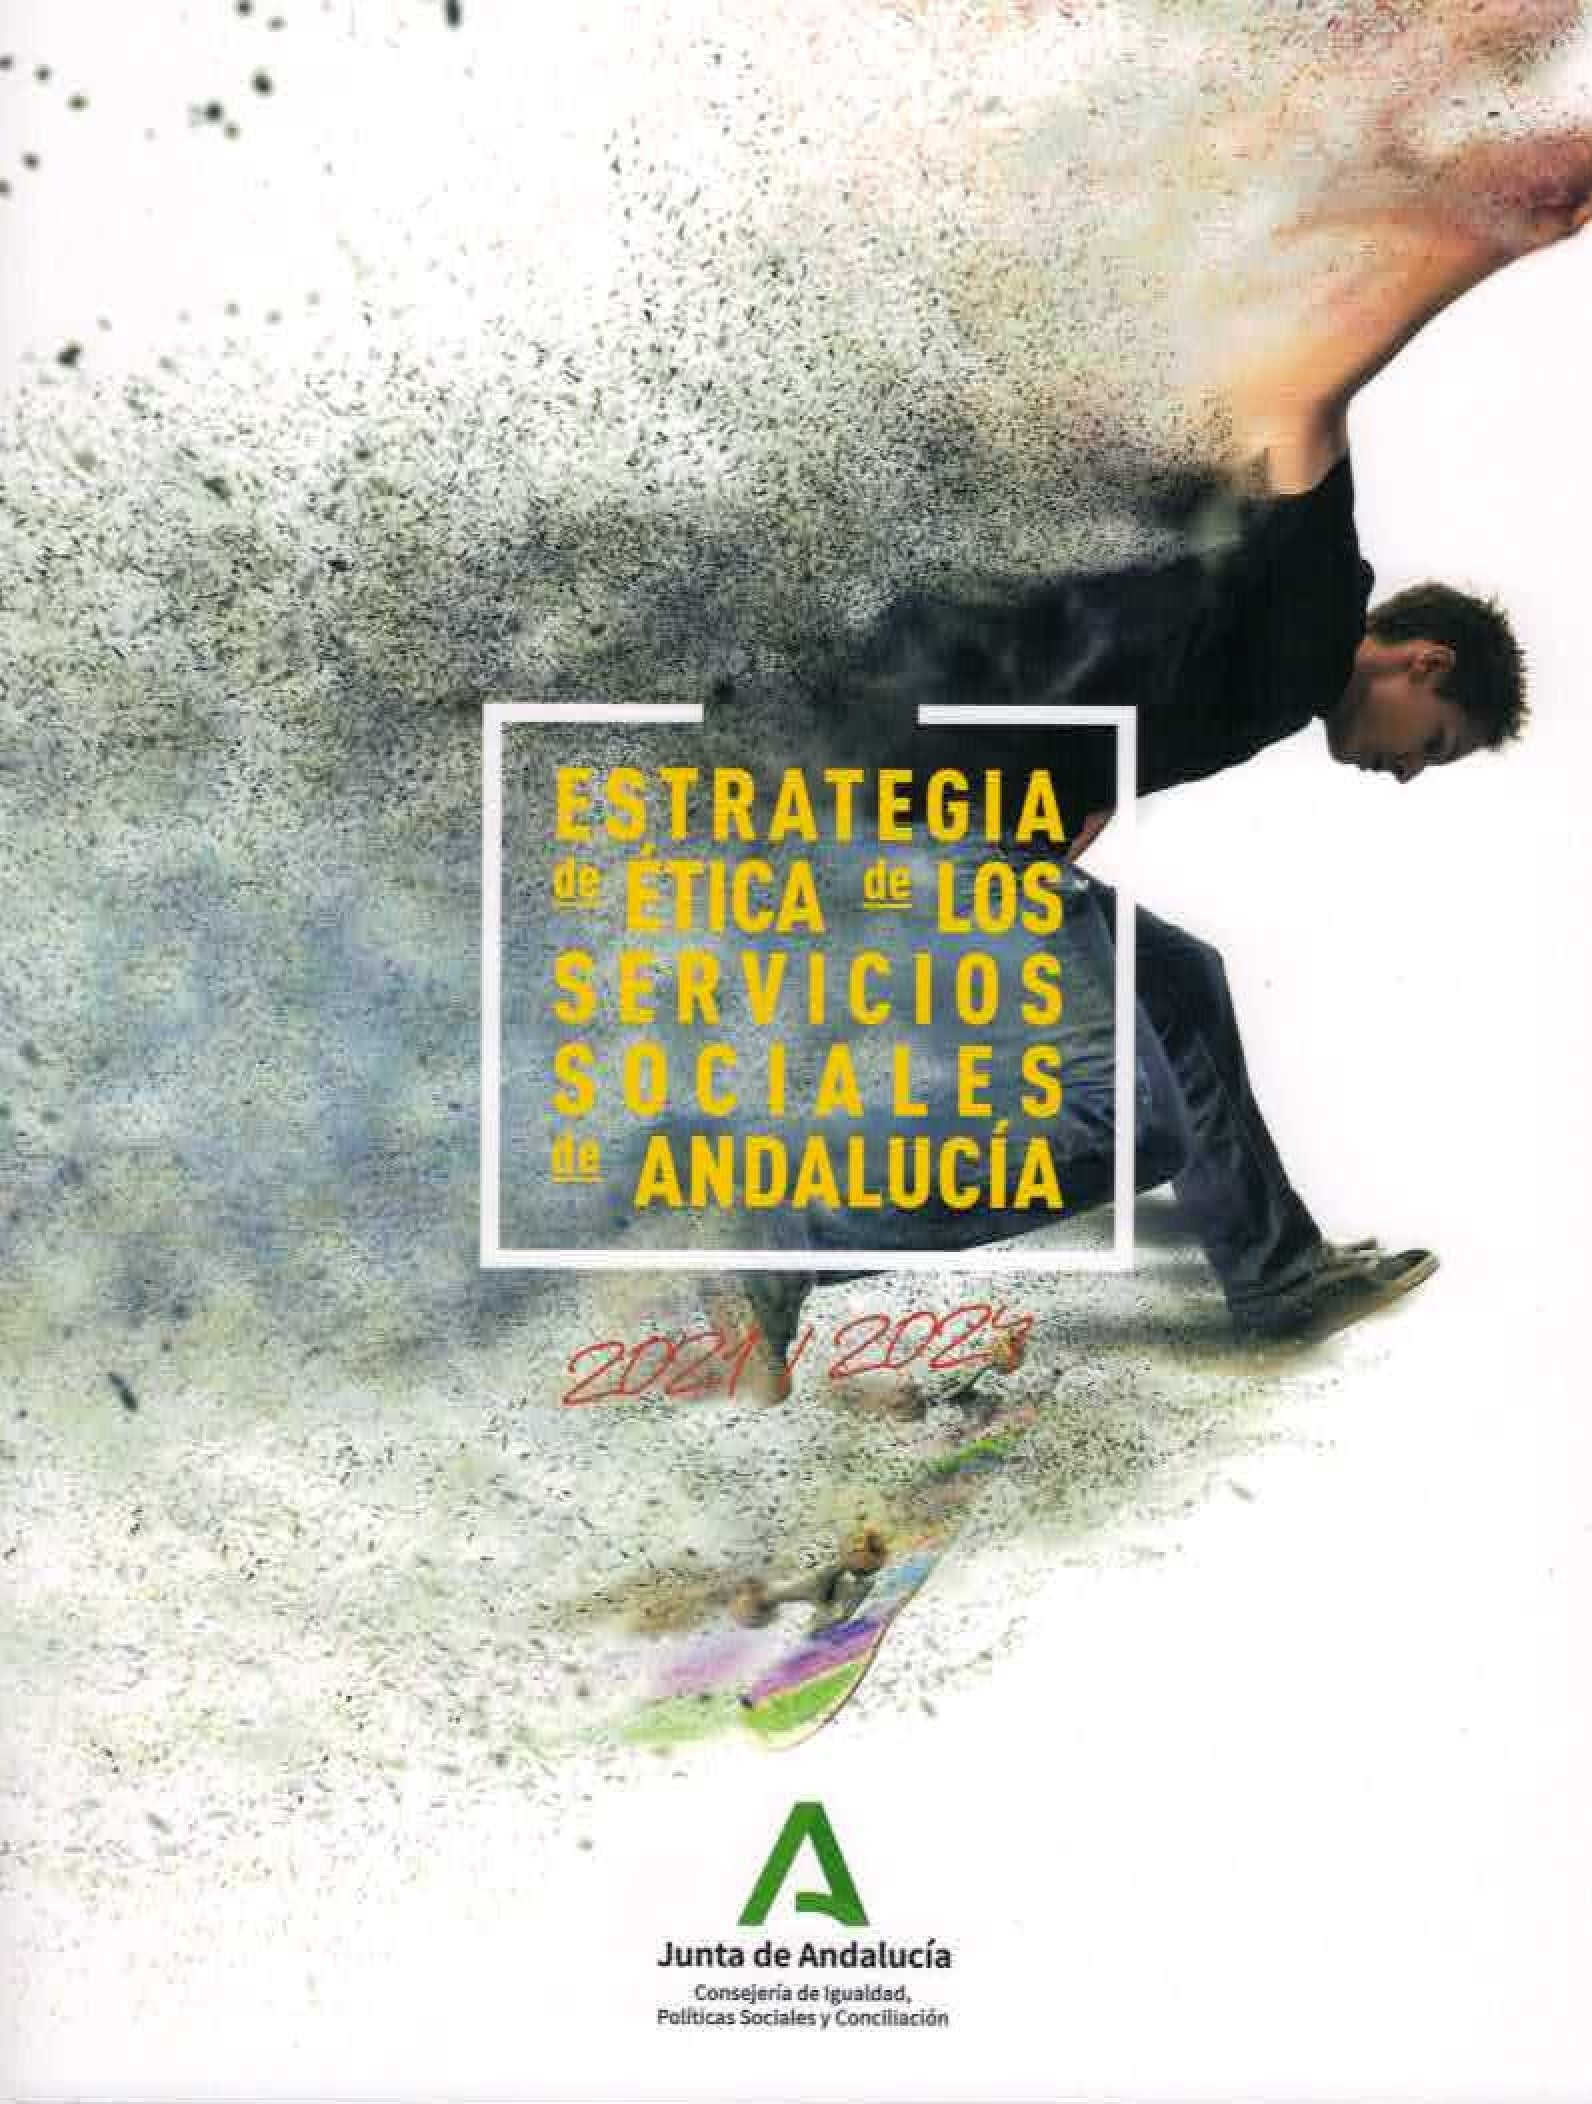 Estrategia de ética de los servicios sociales de Andalucía, 2021-2024.